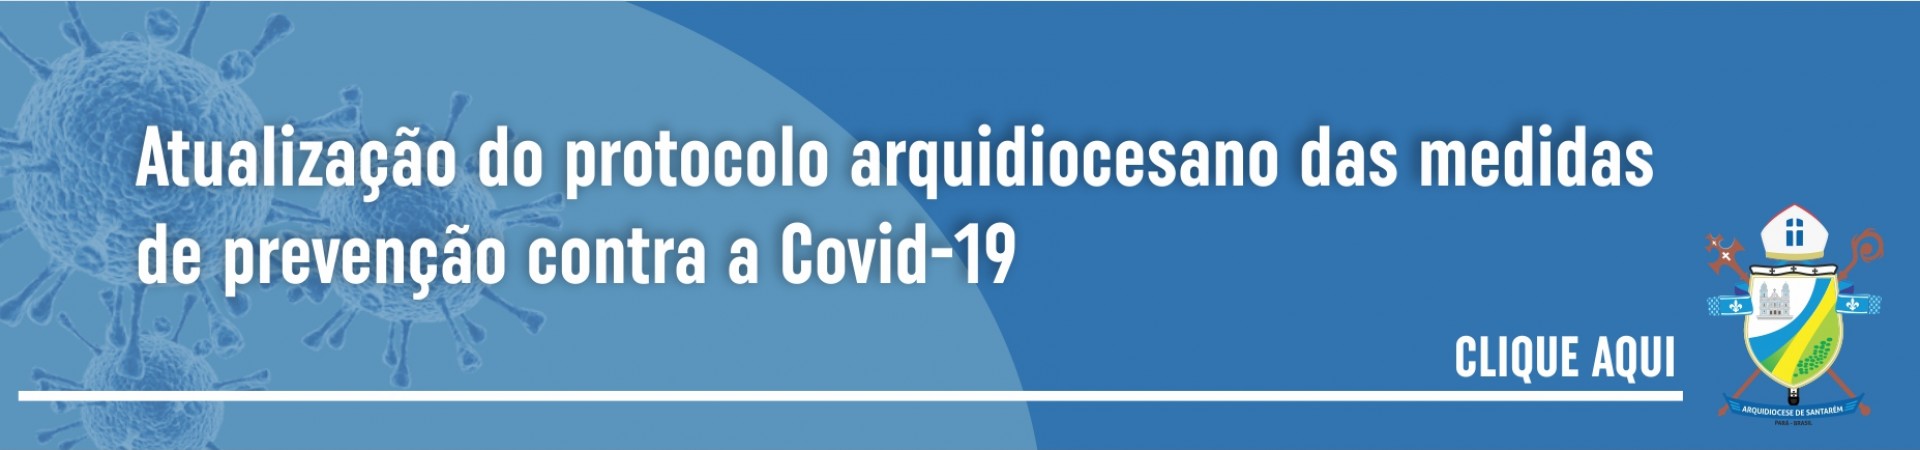 Atualização do protocolo arquidiocesano das medidas de prevenção contra a Covid-19